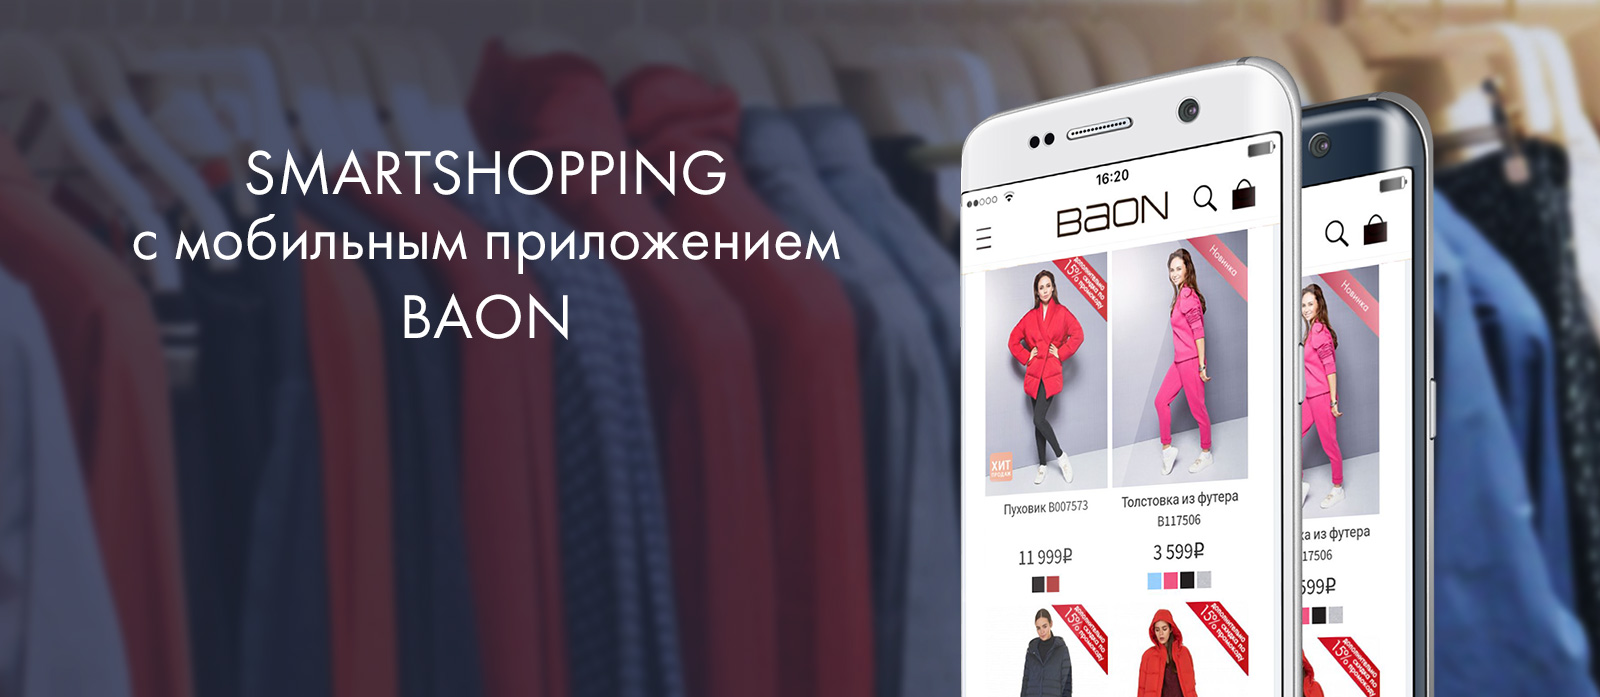 Baon Одежда Официальный Сайт Интернет Магазин